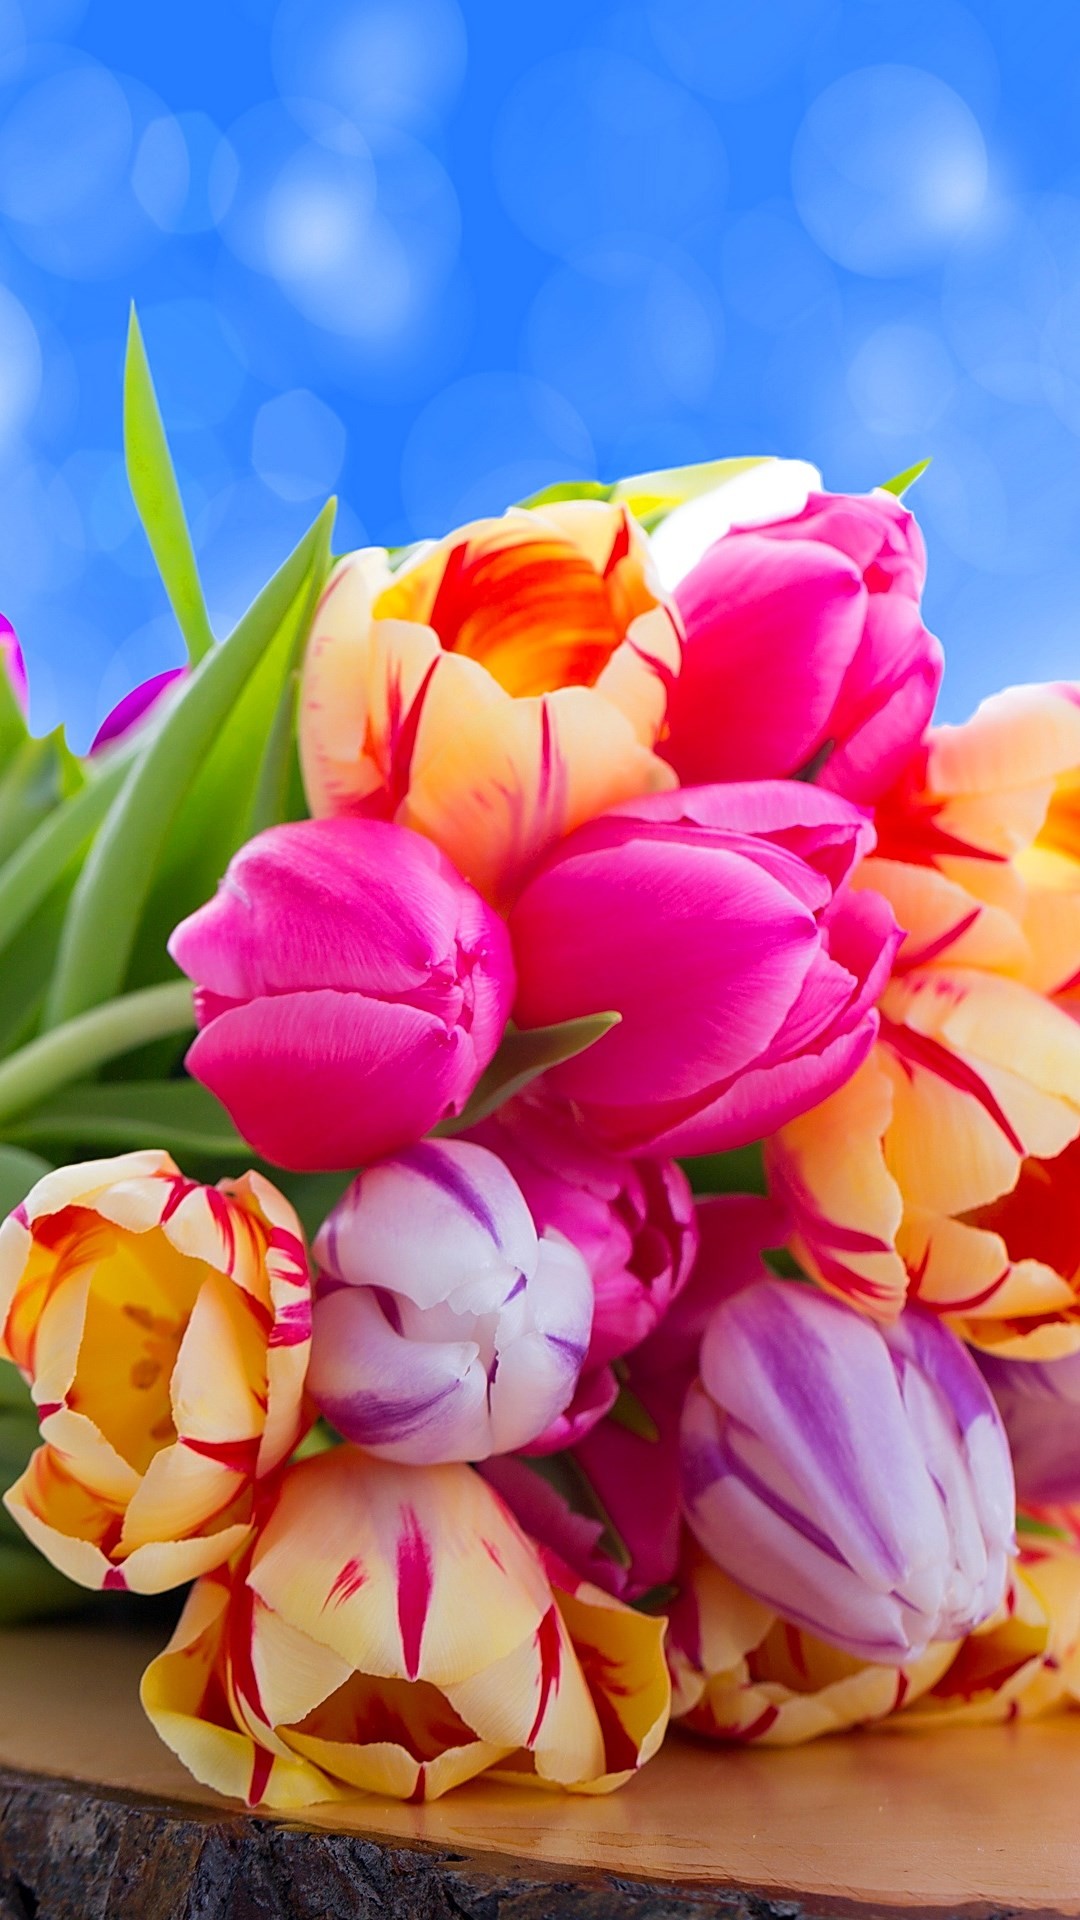 1080x1920 ââTAP AND GET THE FREE APP! Nature Bouquet of Tulips Colorful Beautiful  Flower